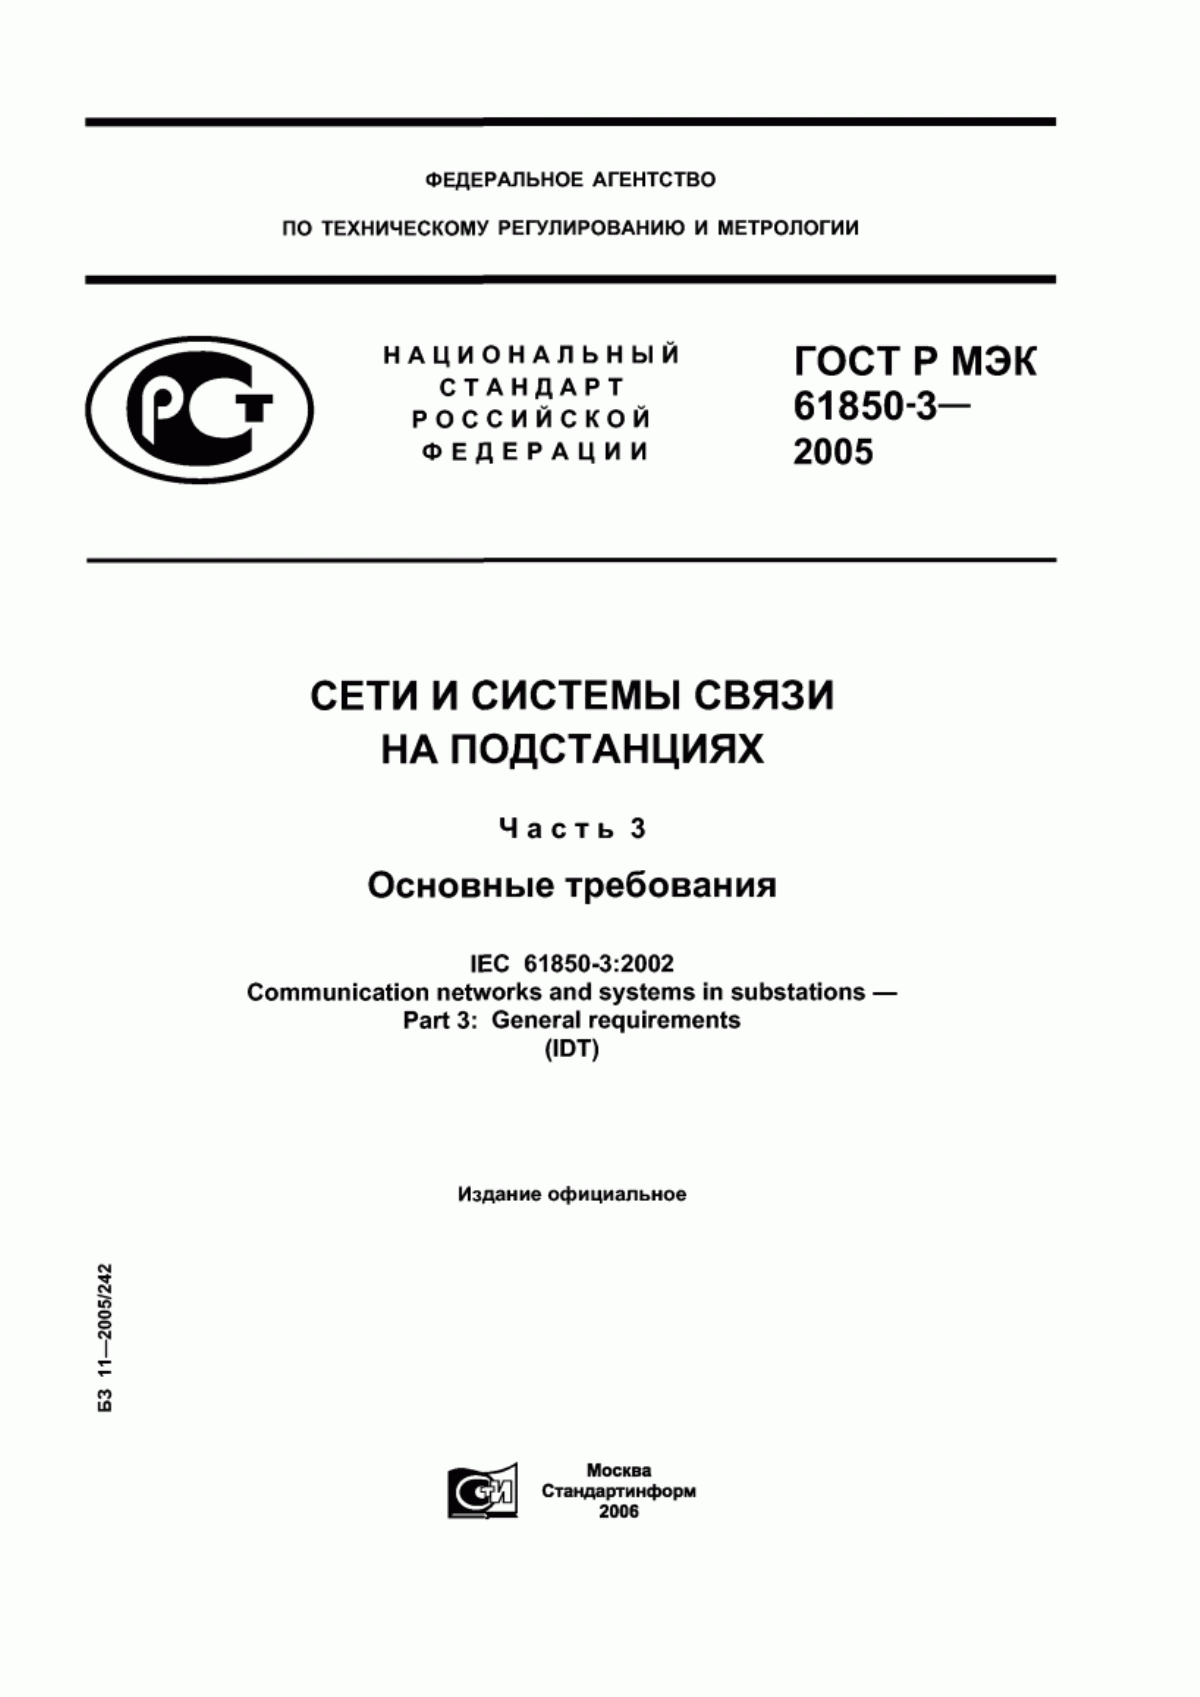 ГОСТ Р МЭК 61850-3-2005 Сети и системы связи на подстанциях. Часть 3. Основные требования